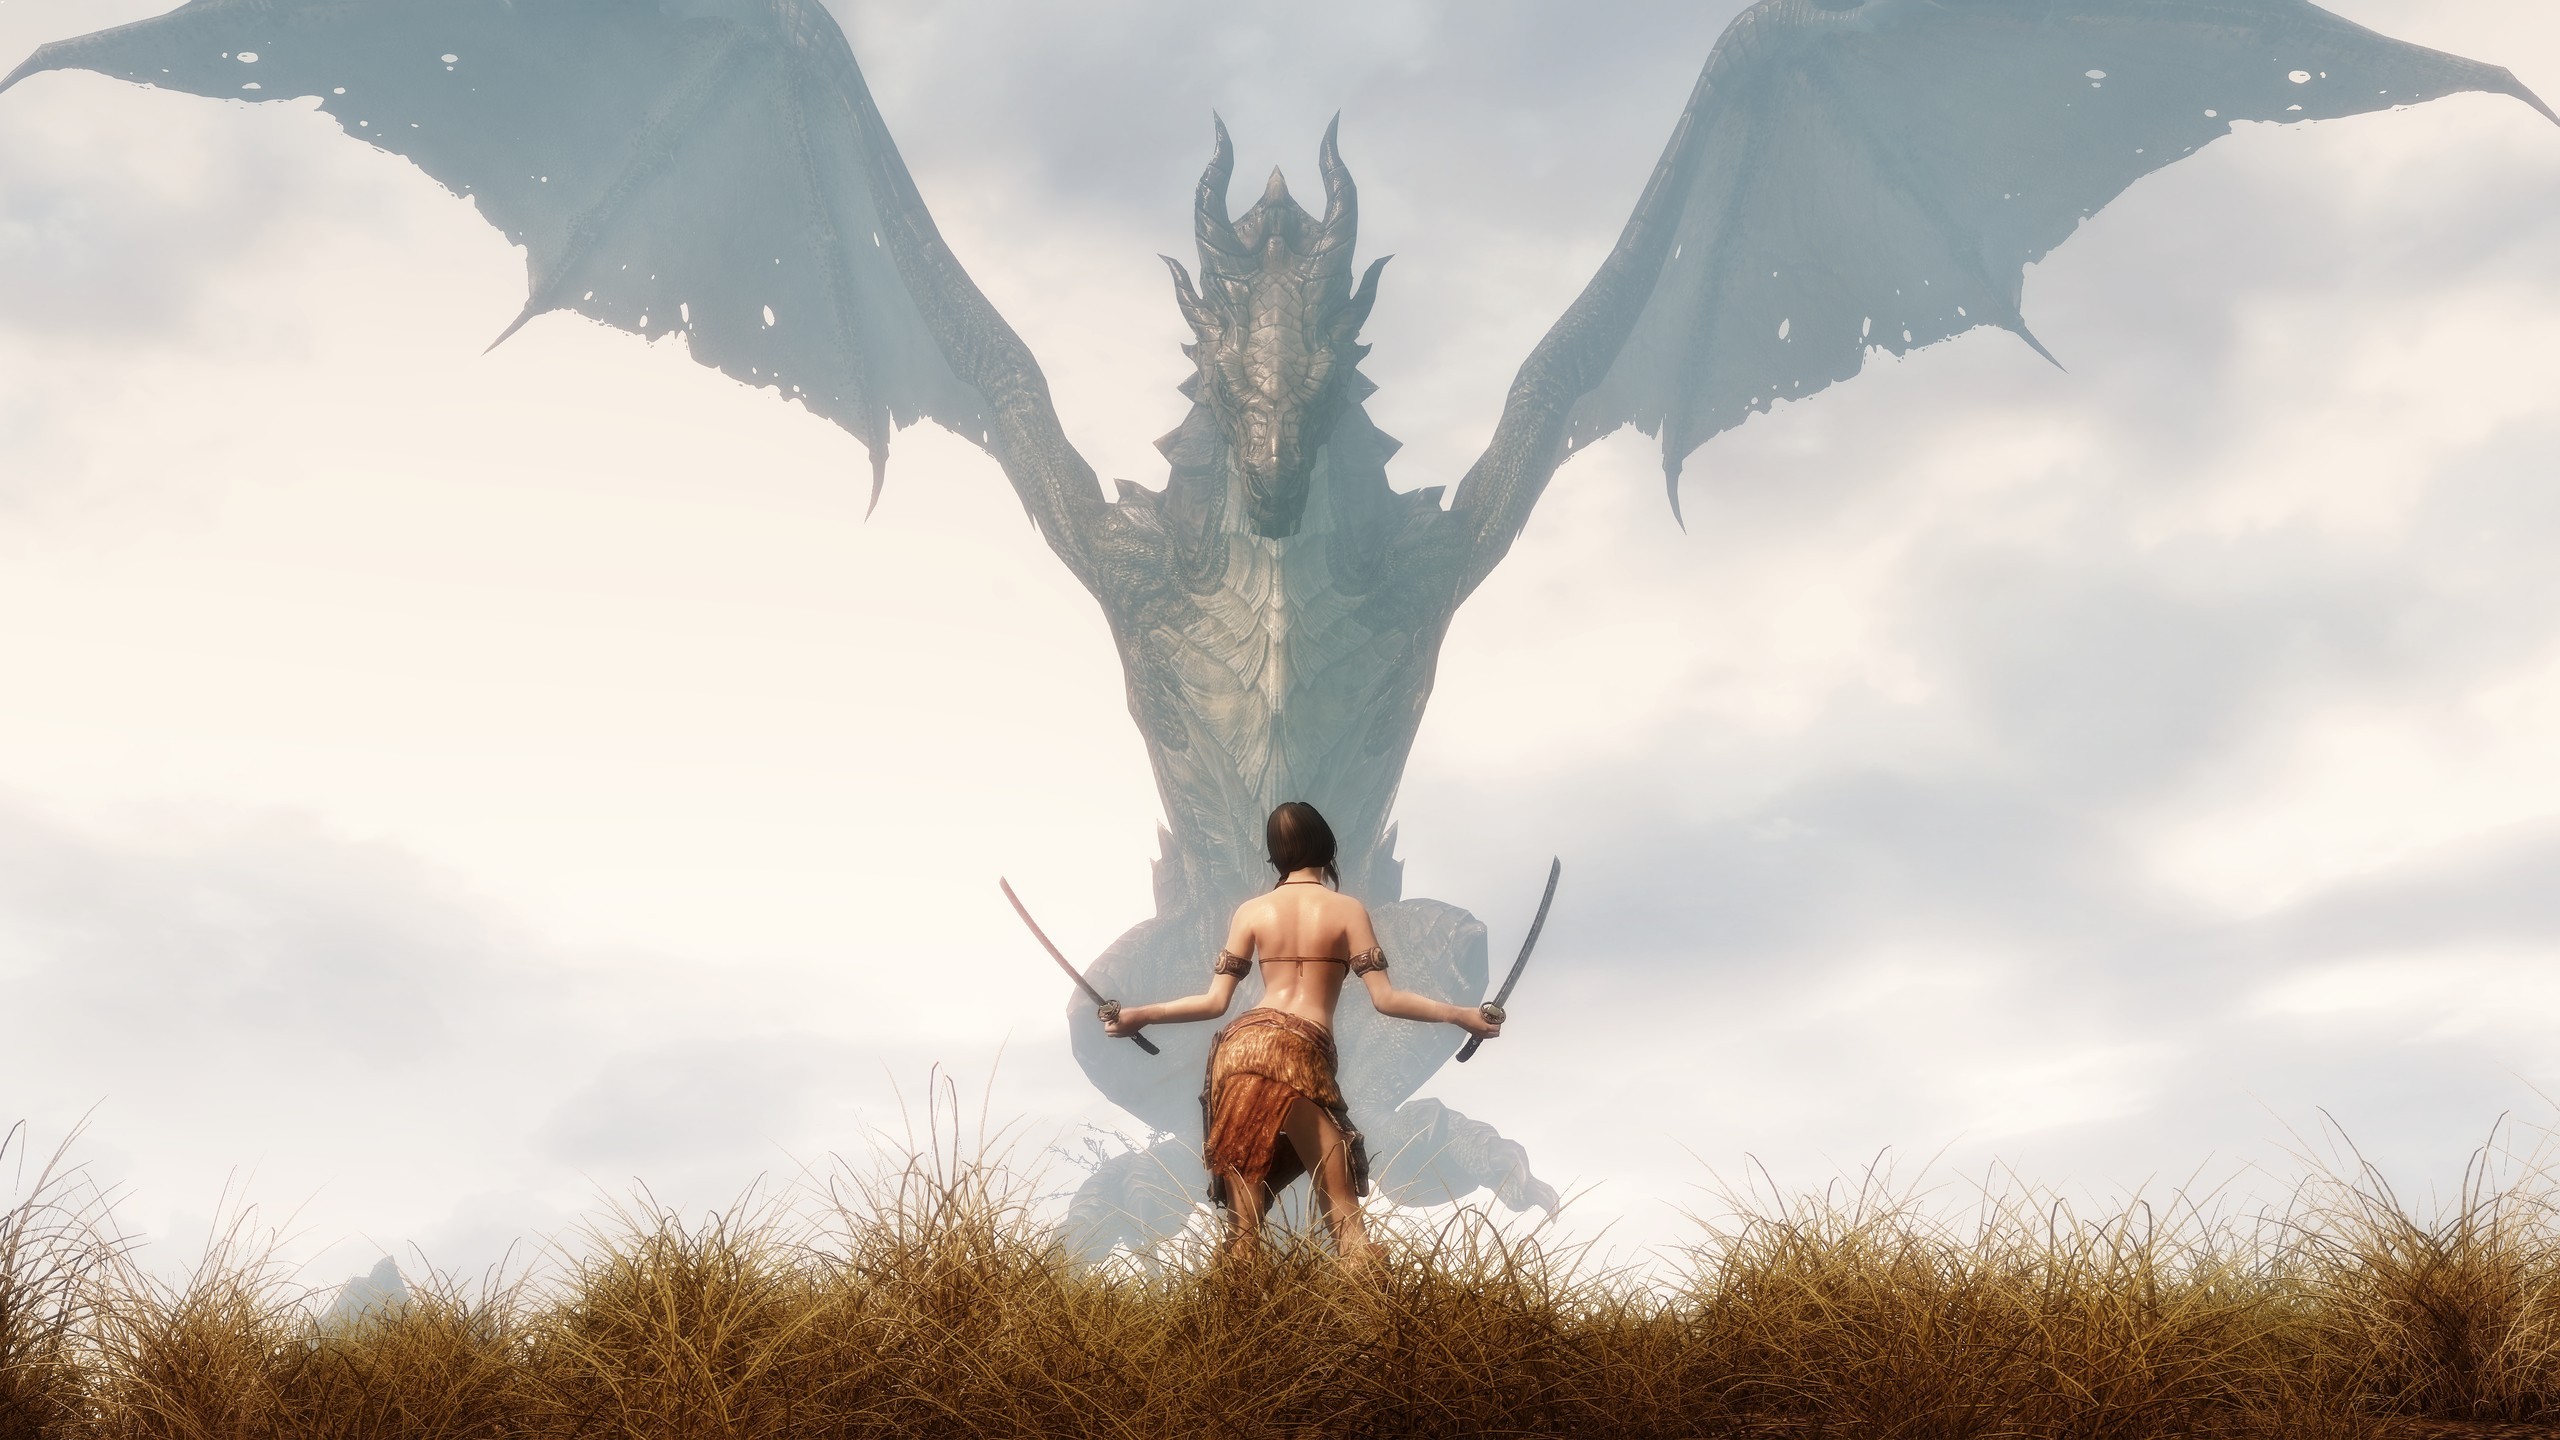 2560x1440 Wallpaper The Elder Scrolls V: Skyrim girl and dragon